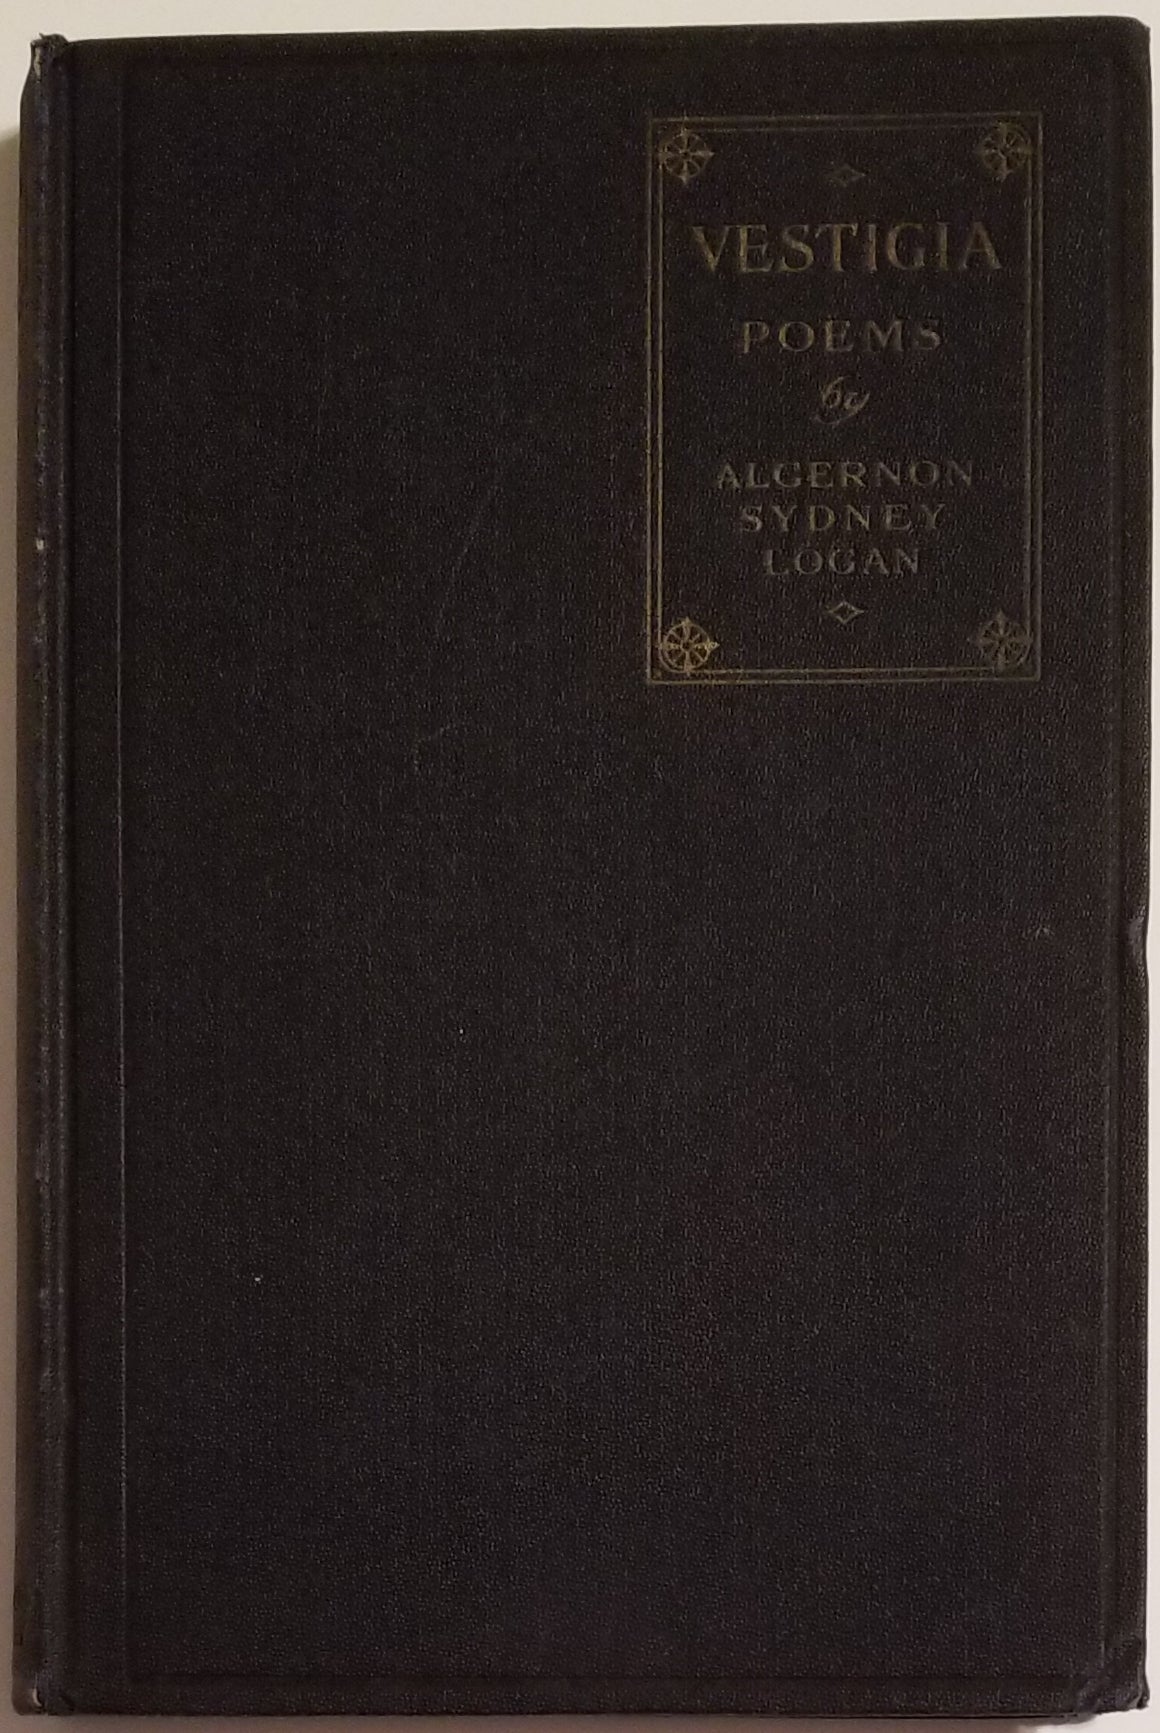 [Book #25558] VESTIGIA. Poems. Algernon Sydney Logan.